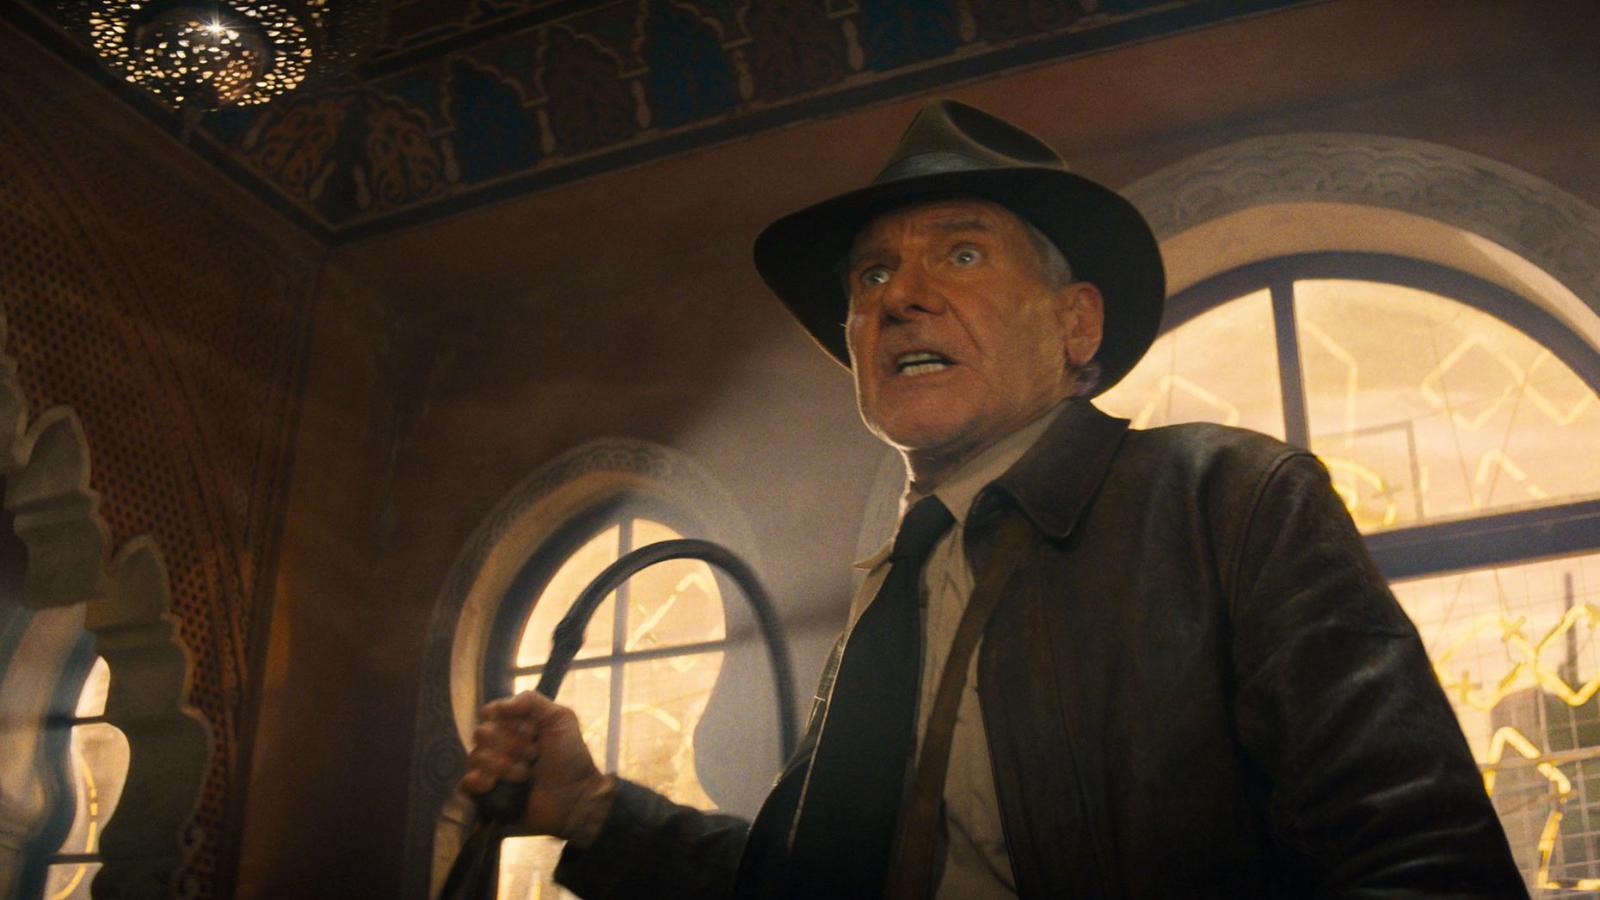 Harrison Ford regresa como Indiana Jones, ¿qué impacto tendrá esta nueva película?  |  Video